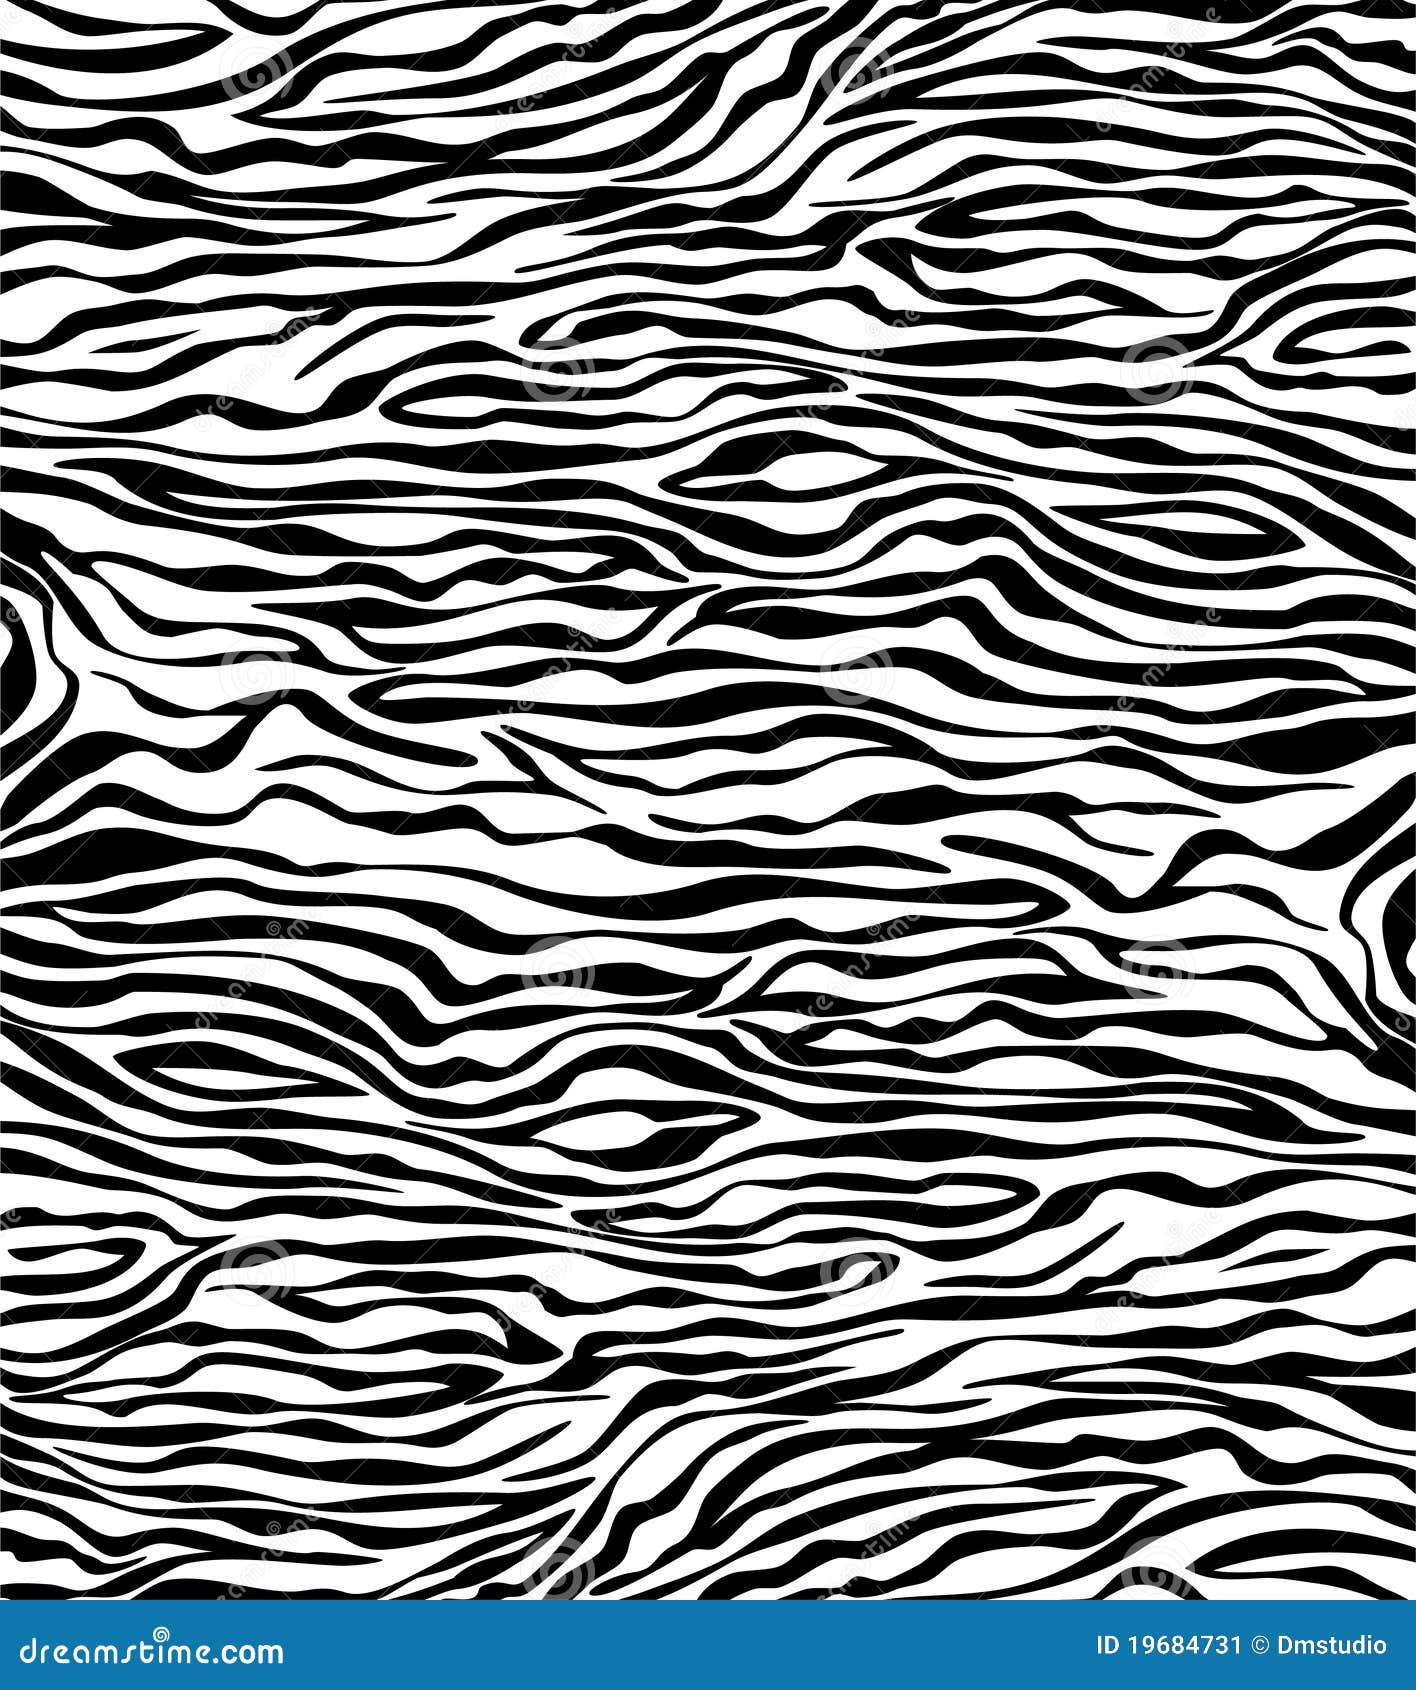 skin texture of zebra